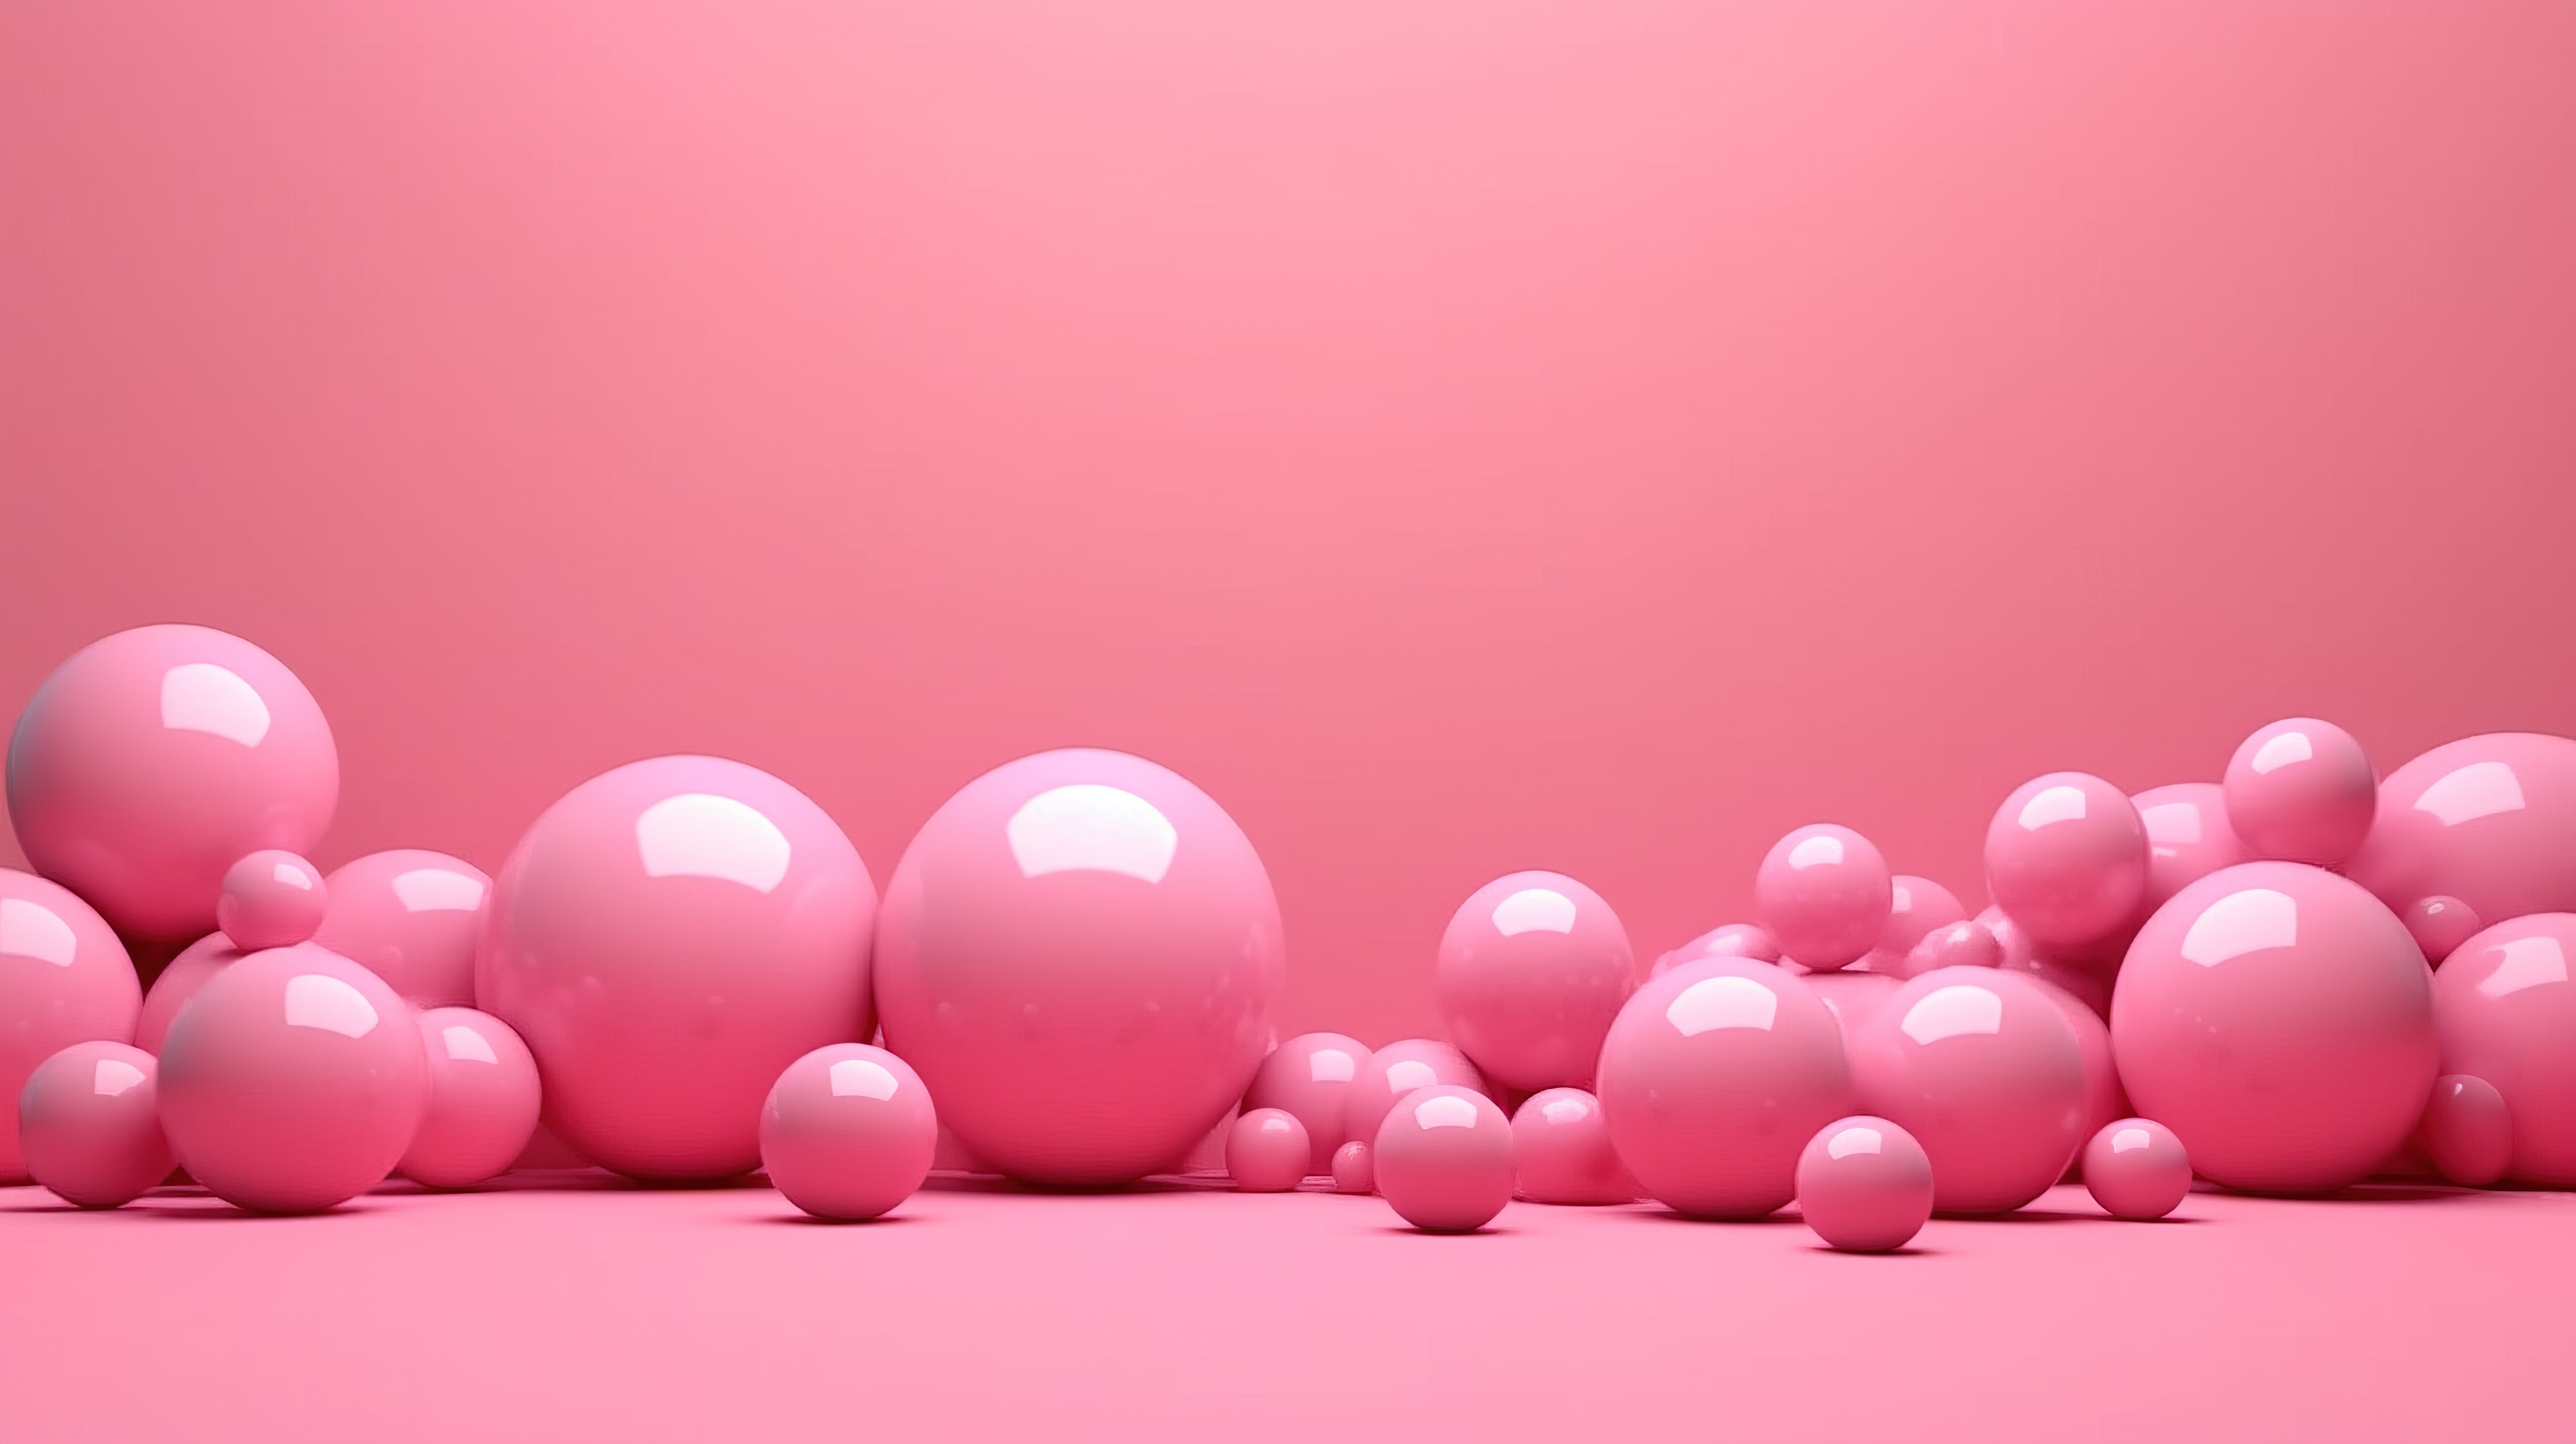 柔和的粉红色背景上的各种粉红色球体 3D 渲染插图图片